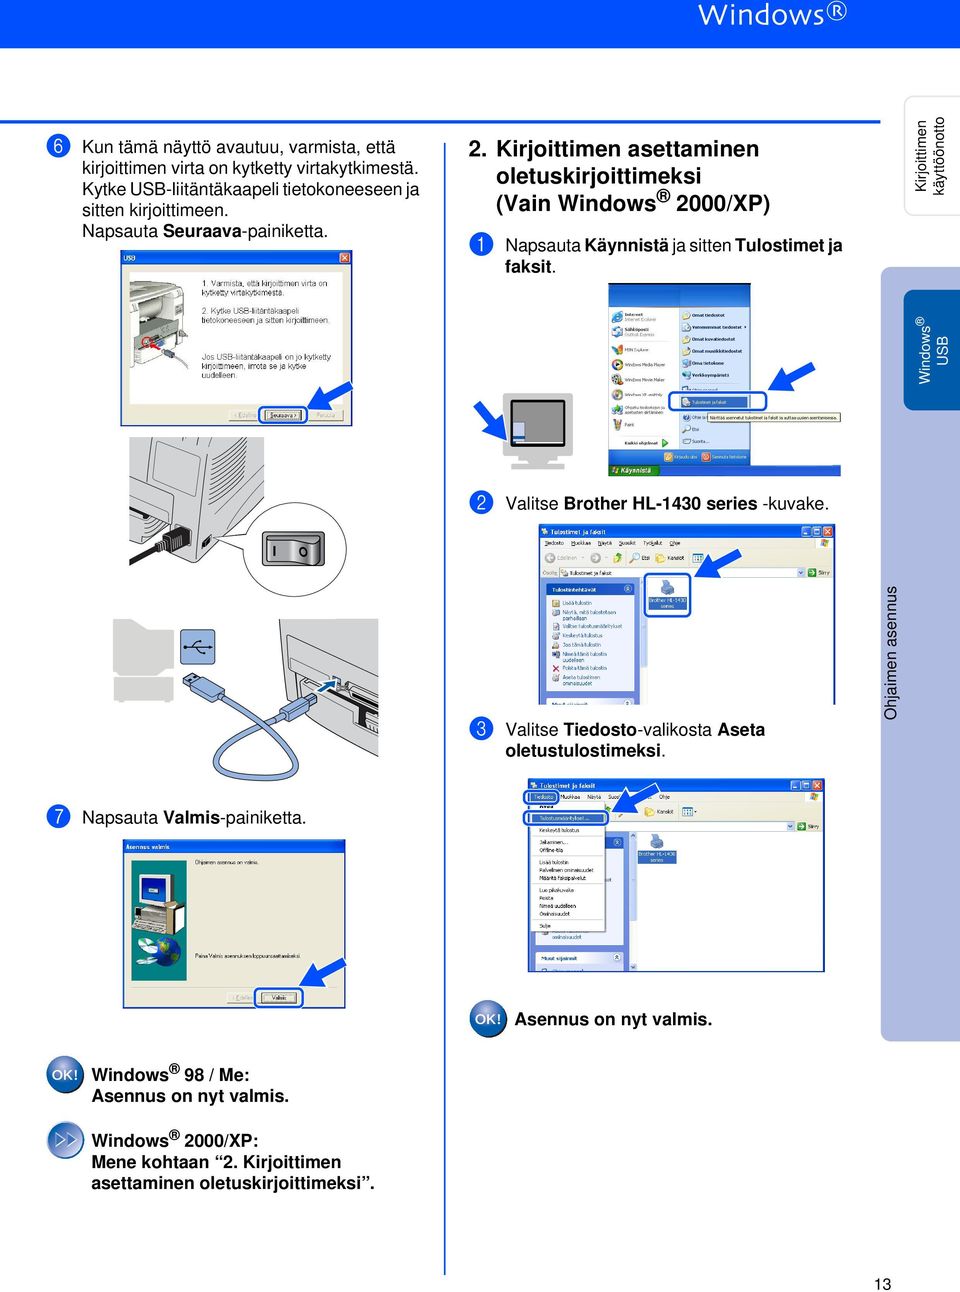 Kirjoittimen käyttöönotto Windows 2 Valitse Brother HL-1430 series -kuvake. 3 Valitse Tiedosto-valikosta Aseta oletustulostimeksi.